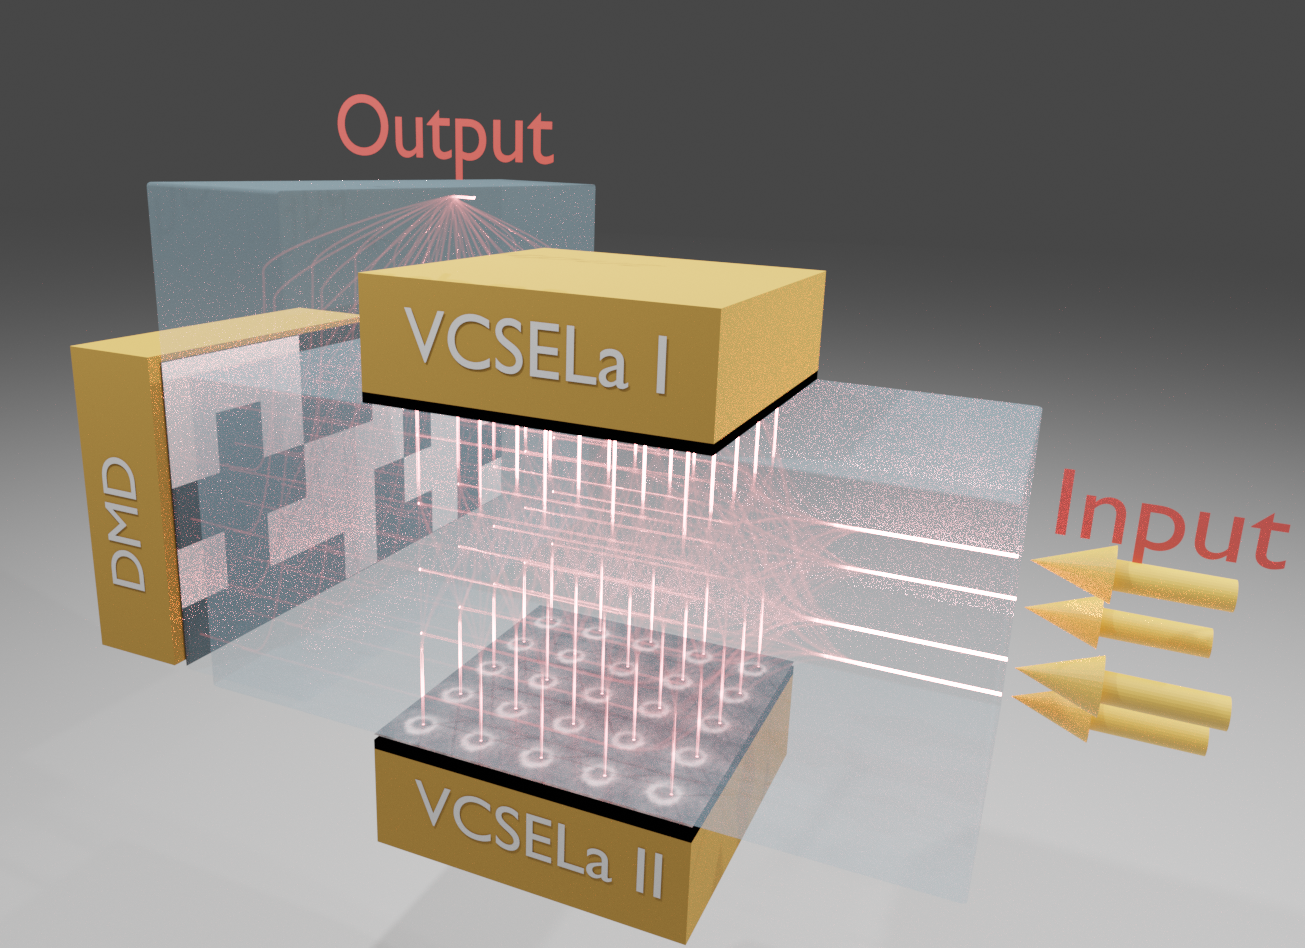 Les guides d'ondes photoniques 3D permettront de réaliser des circuits intégrés d'une taille égale à celle d'un réseau neuronal, ce qui est impossible avec l'intégration 2D. Credit : Daniel Brunner